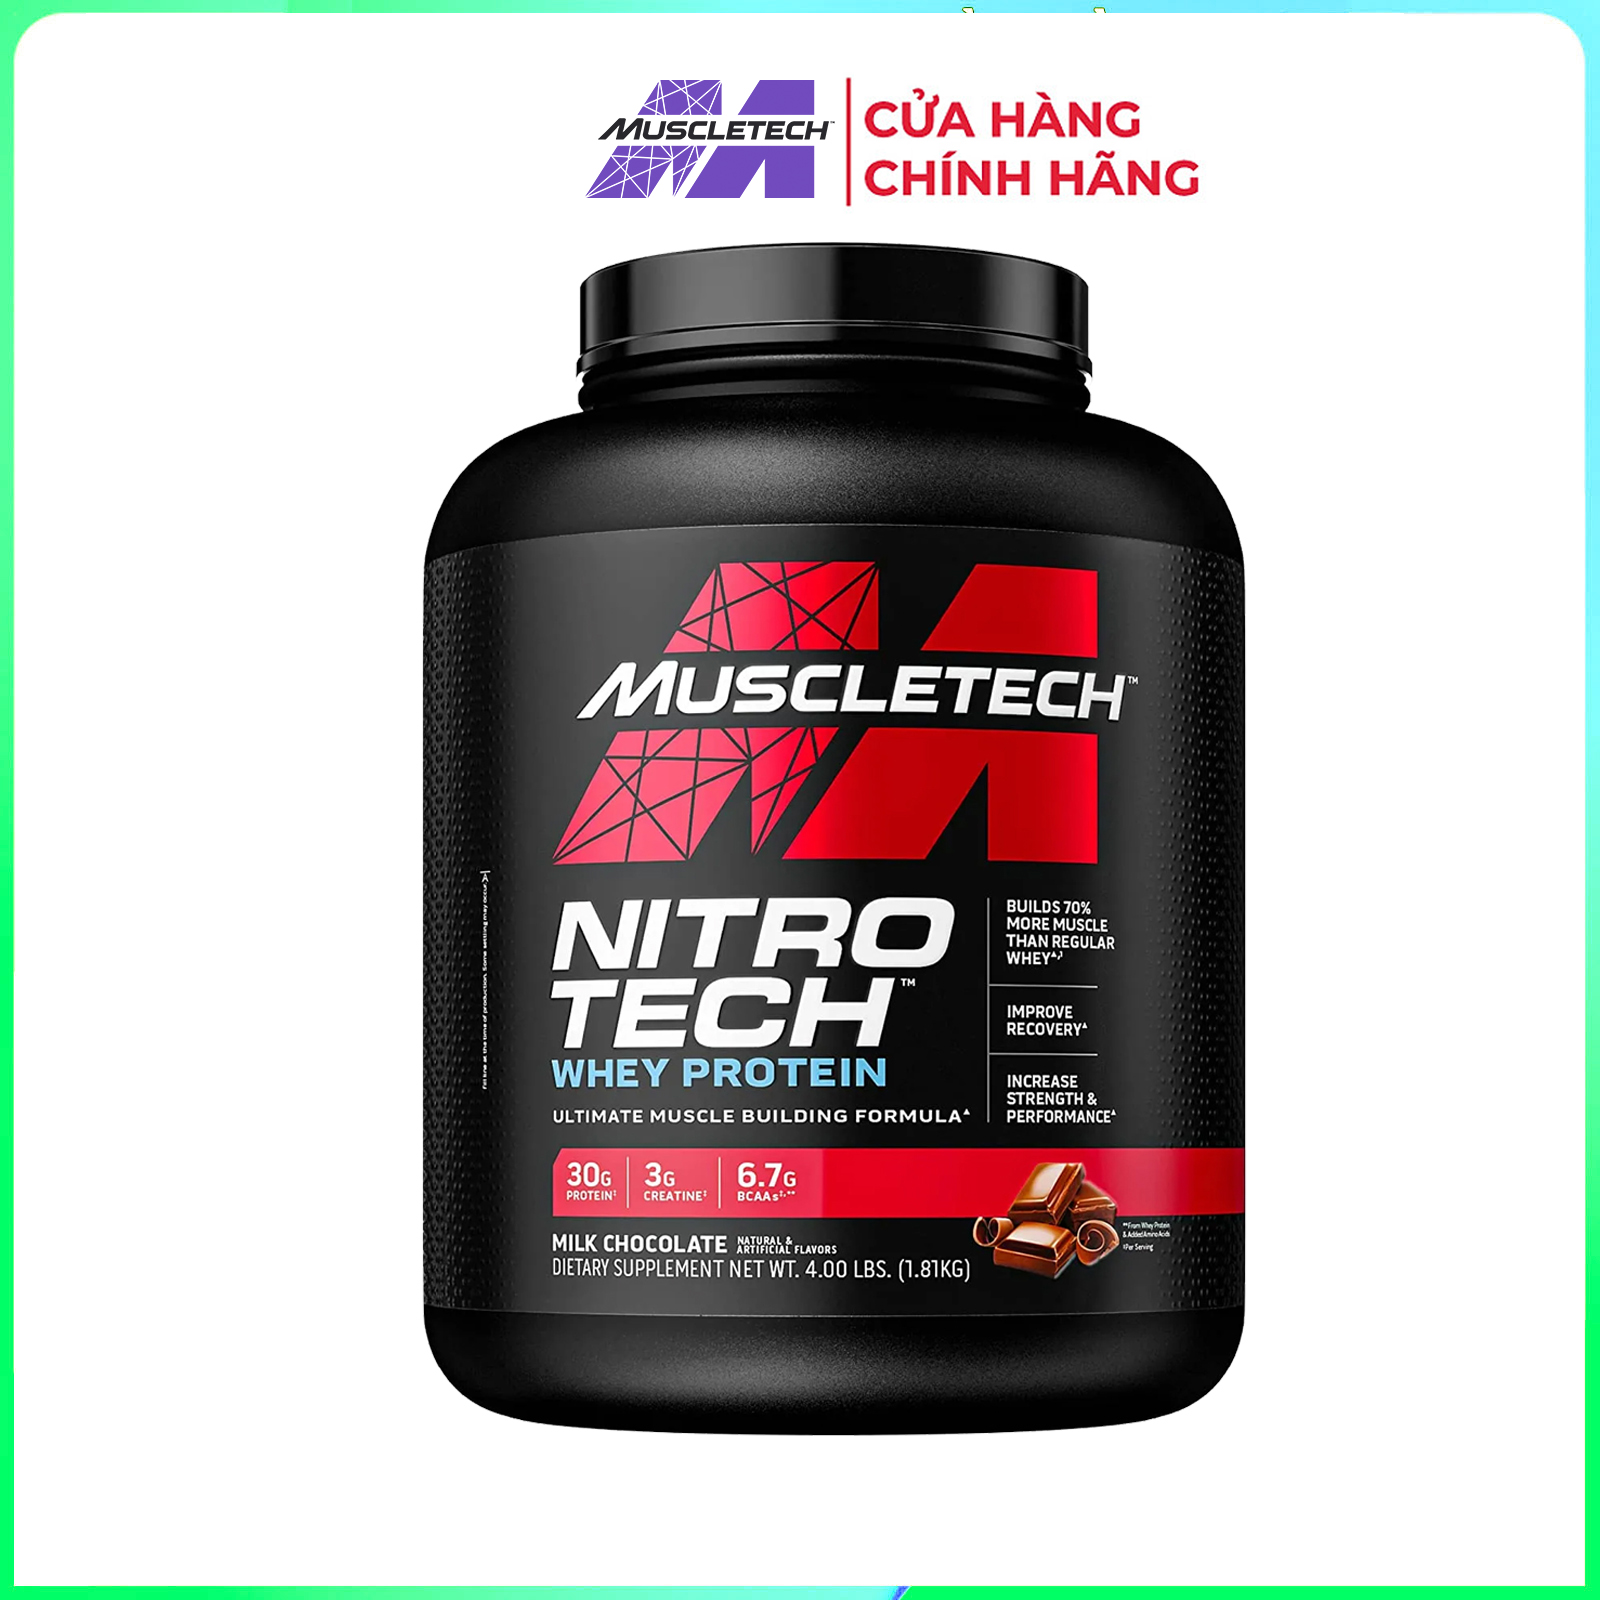 HCMSữa tăng cơ cực mạnh Whey Protein Nitro Tech của MuscleTech hộp 1.8kg